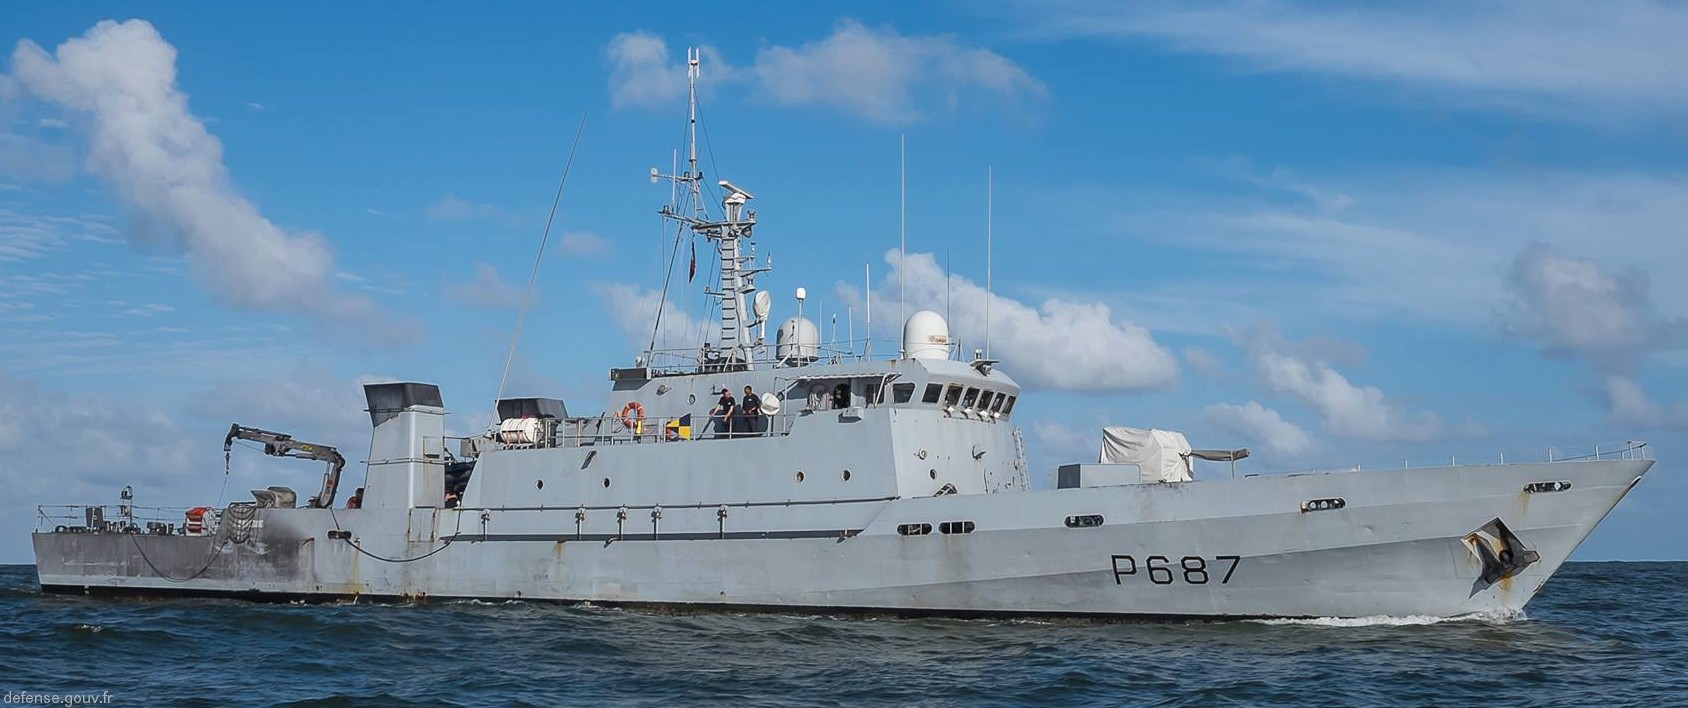 p-687 la gracieuse l'audacieuse p400 class patrol vessel french navy patrouilleur marine nationale 05